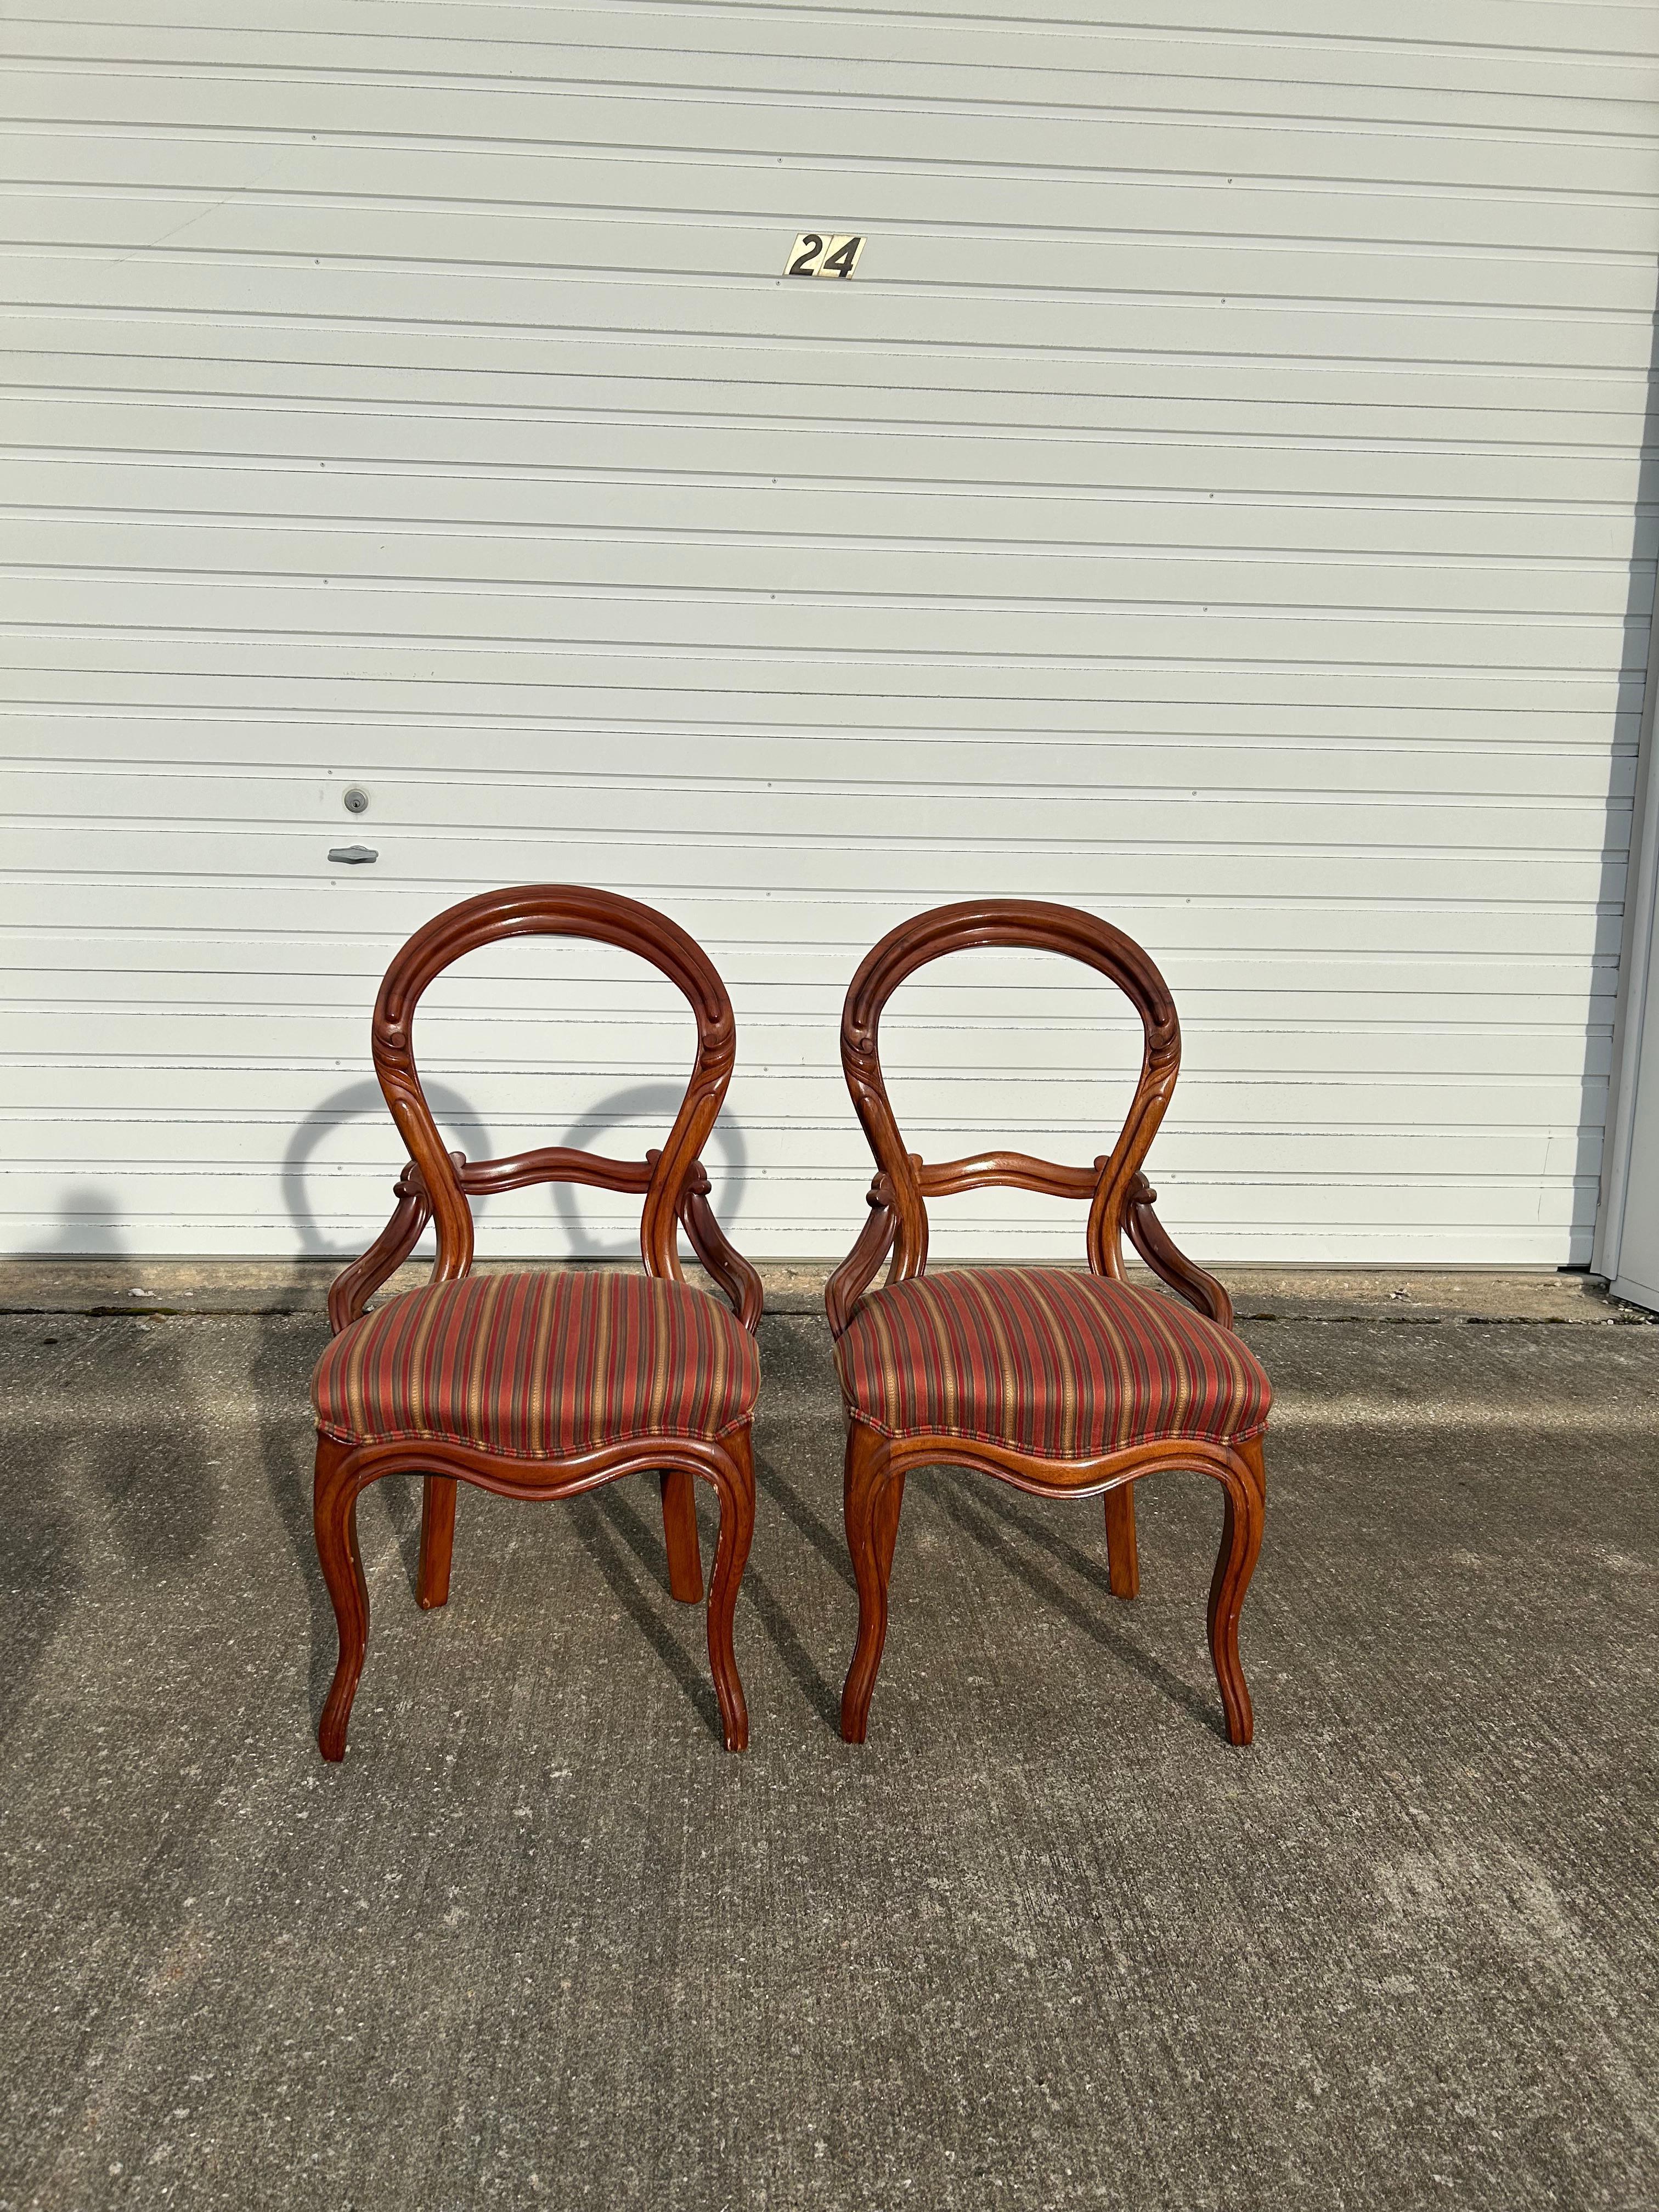 Zwei frühviktorianische Beistellstühle im Stil von John Henry Belter. Diese Stühle sind sehr einzigartig und halten eine ziemlich schöne Stoff, es scheint nicht, wie es irgendwelche Flecken oder Risse sind. Das Holz muss aufgrund seines Alters